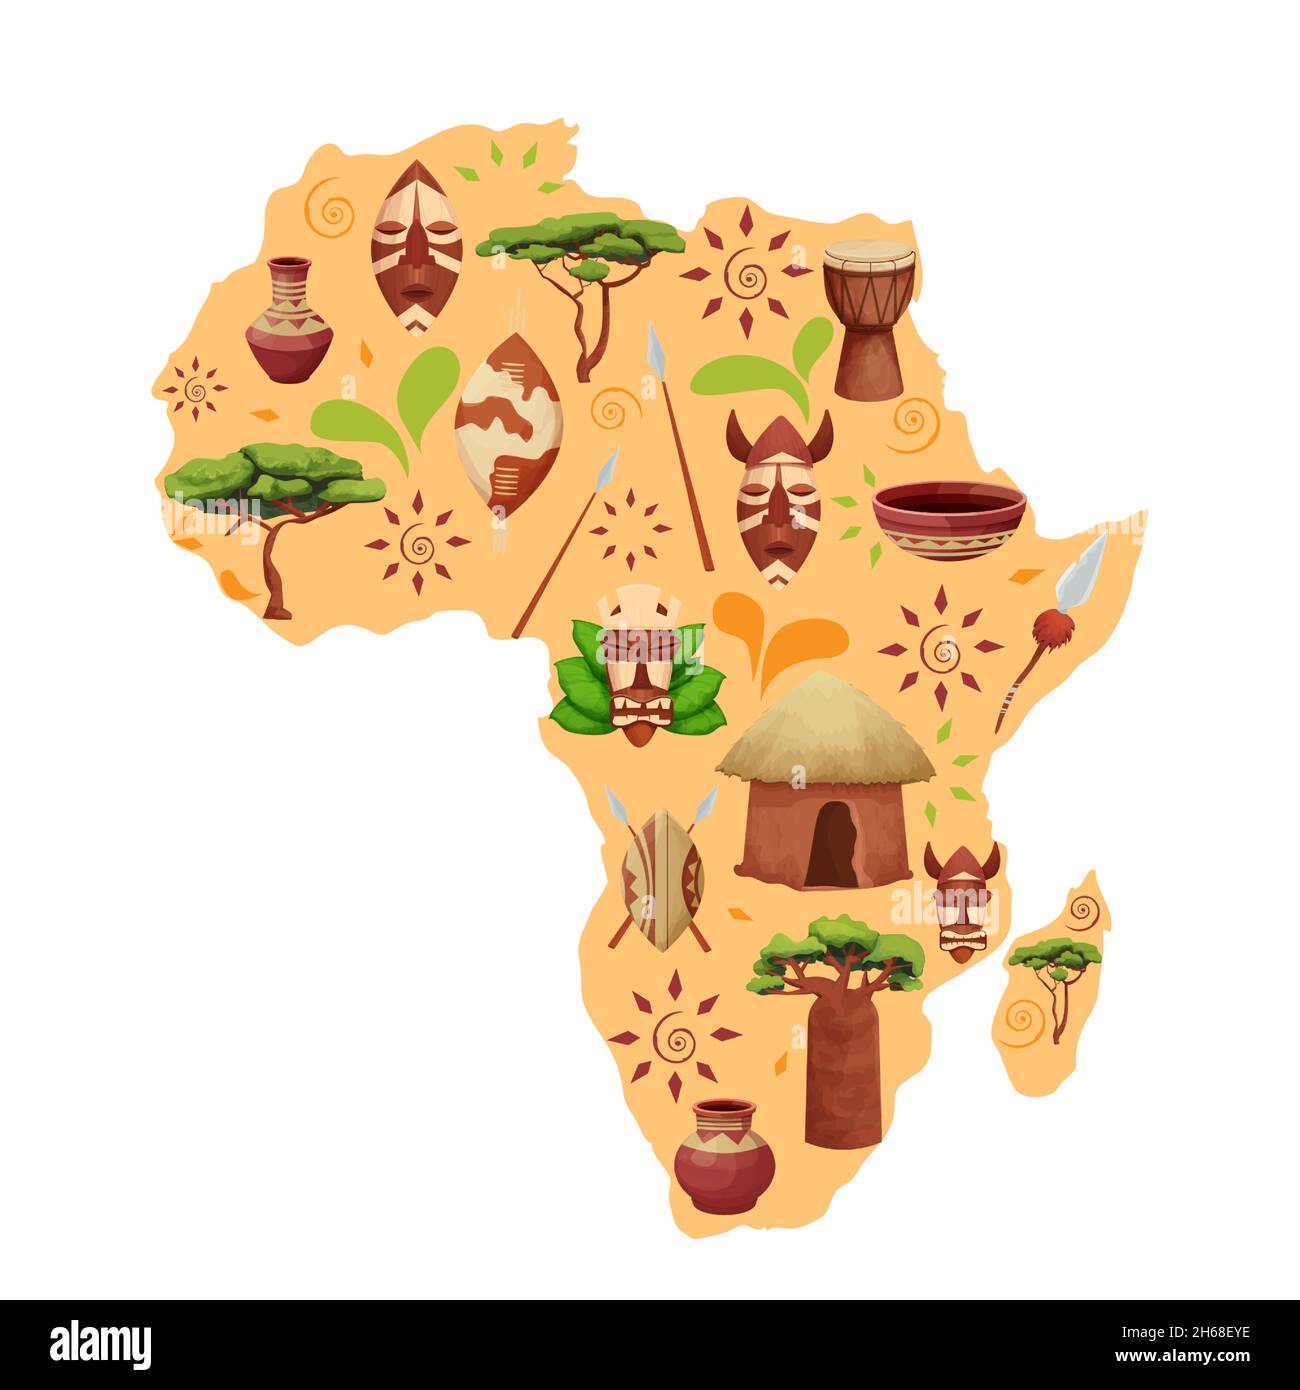 Silhouette de carte africaine avec éléments ethniques dans le style de dessin animé.Ornements tribaux sur les boucliers, masques, objets de la nature baobab arbre, savane acacia.Illustration vectorielle Illustration de Vecteur